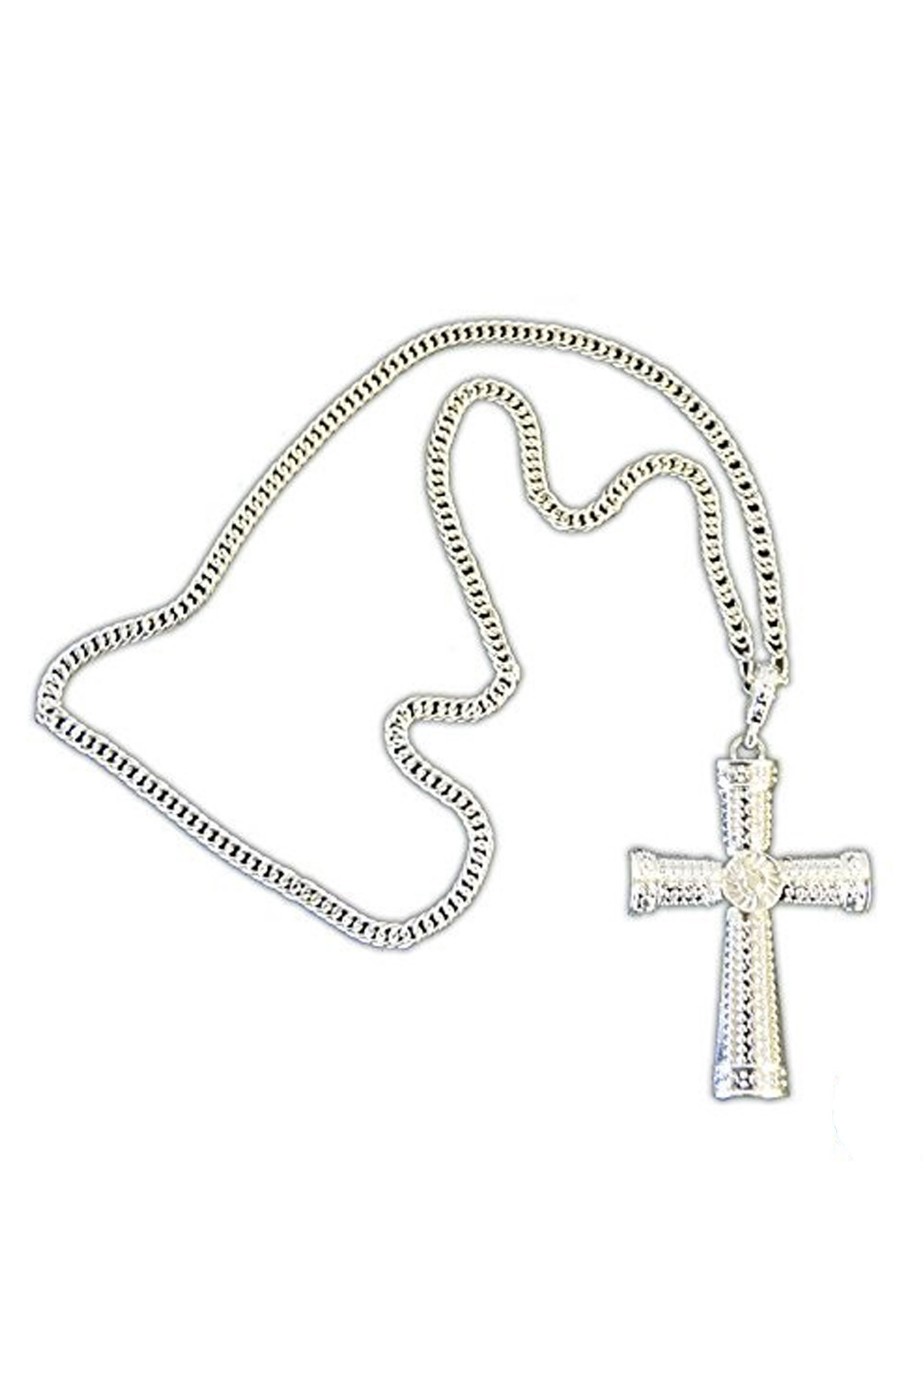 Collana con croce color argento decorata per papa, vescovo, preti